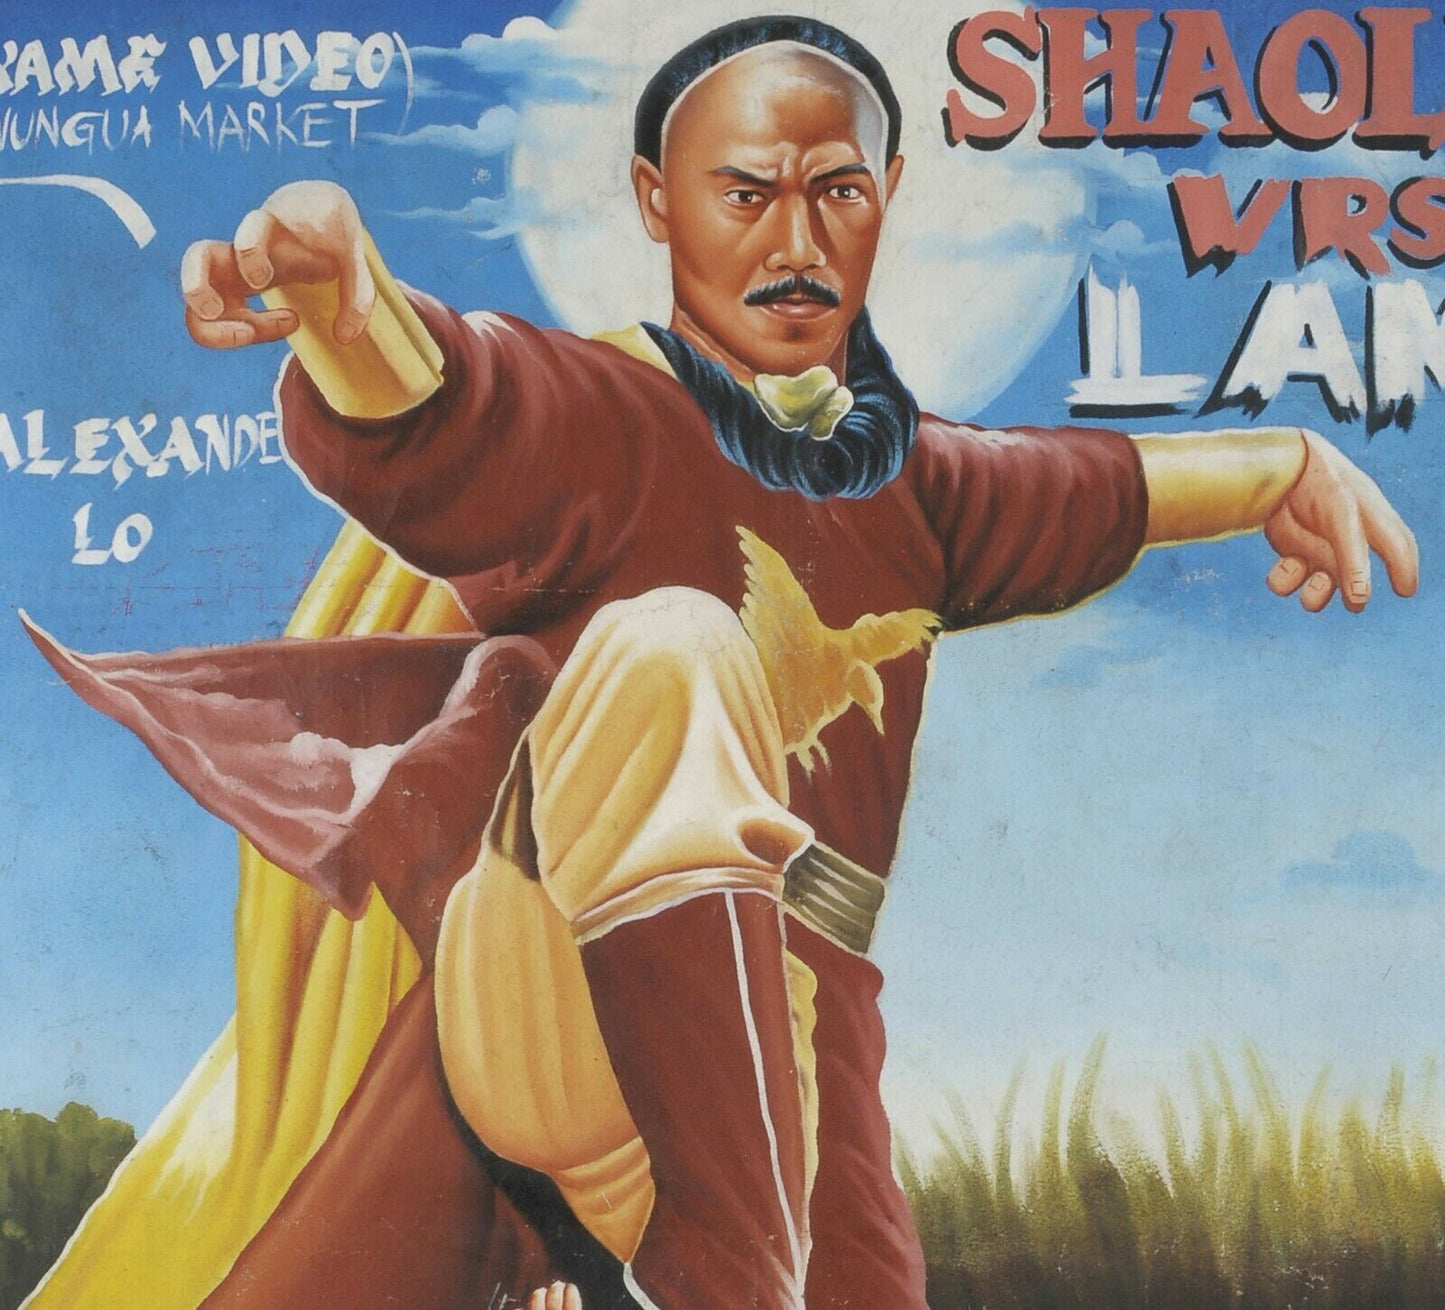 Cartel de la película Arte de la pared del cine africano pintado a mano Ghana SHAOLIN VRS LAMA - Tribalgh